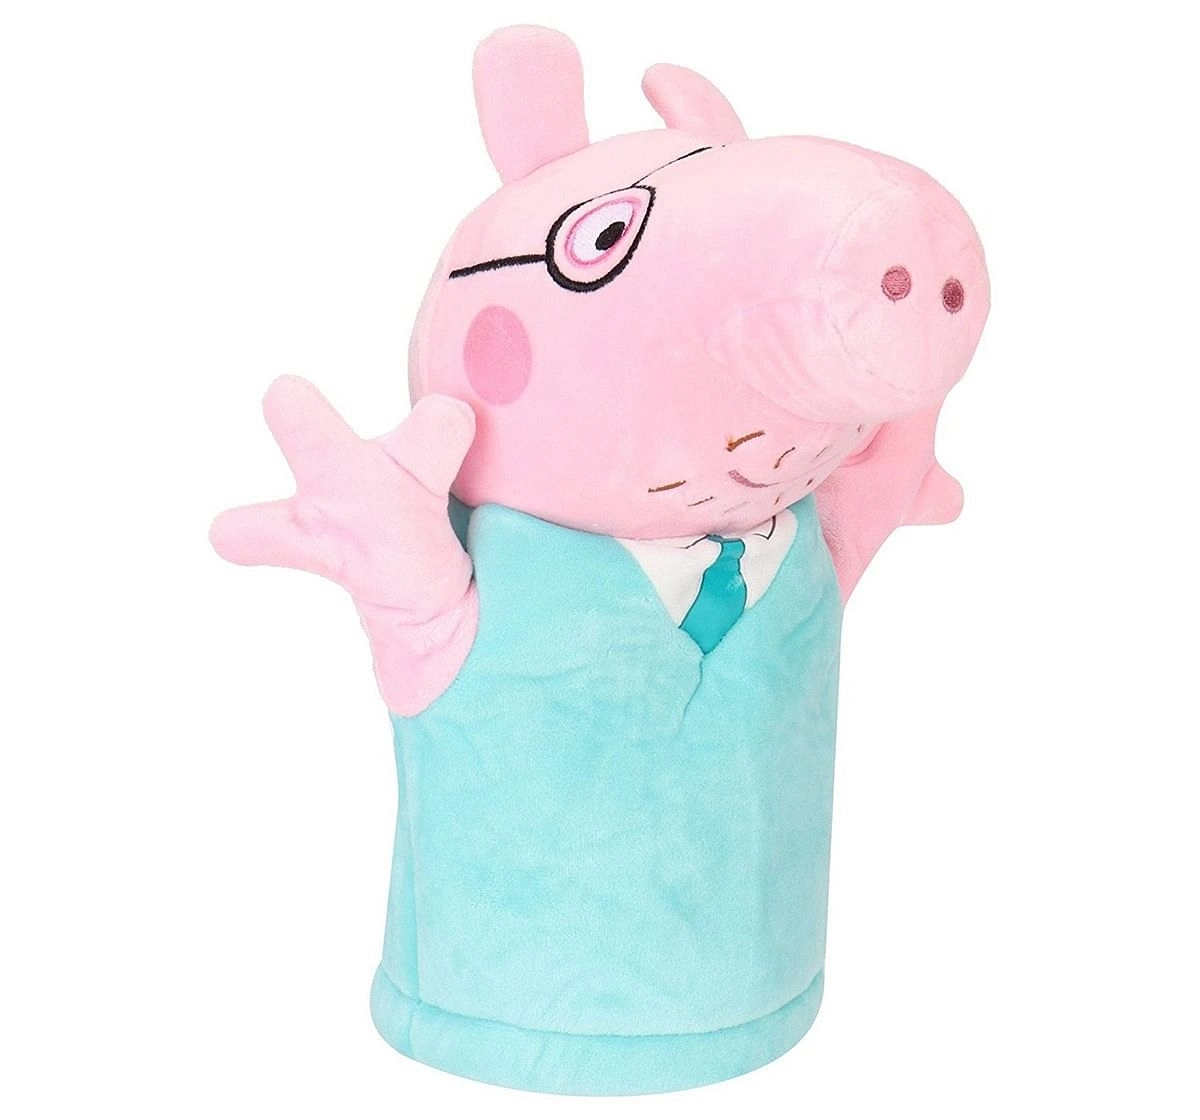 Peppa Pig Daddy 26 Cm Soft Toy for Kids age 3Y+ (Orange)